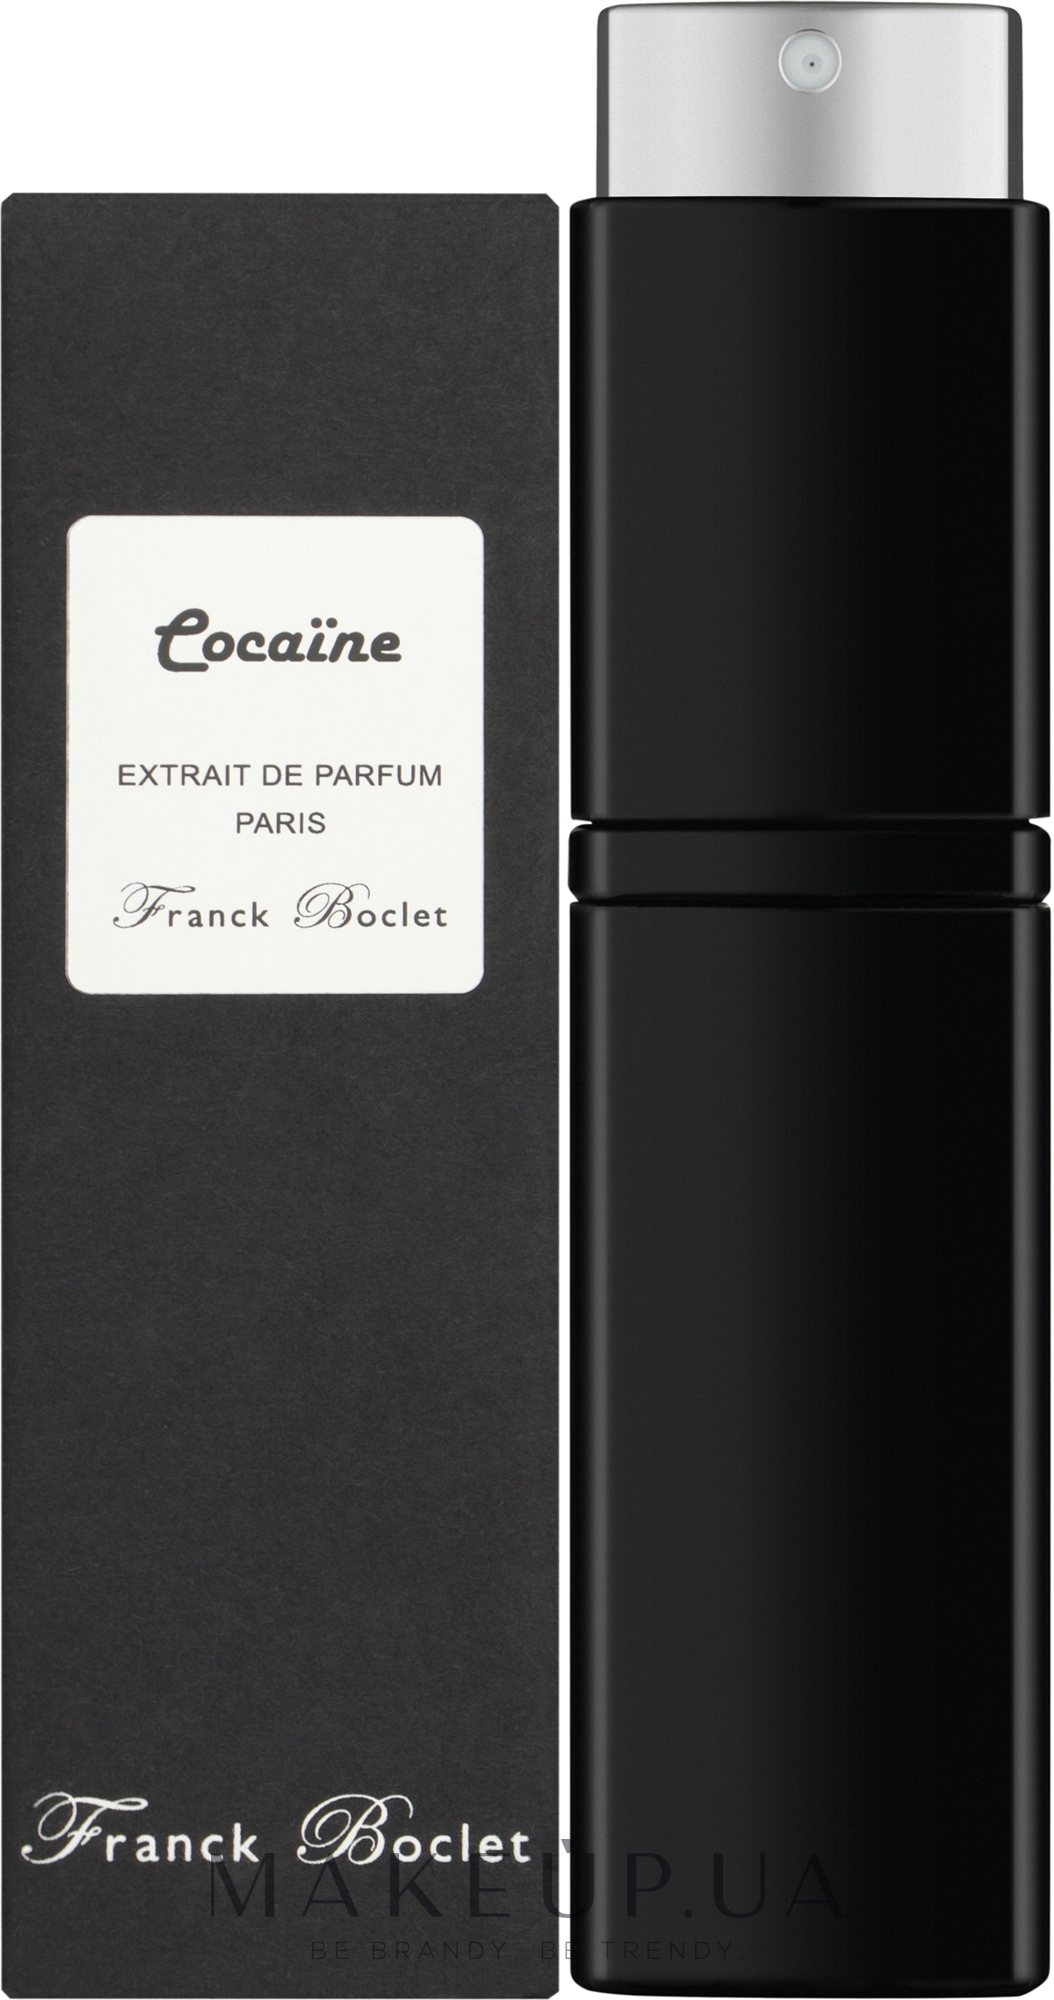 Franck Boclet Cocaїne